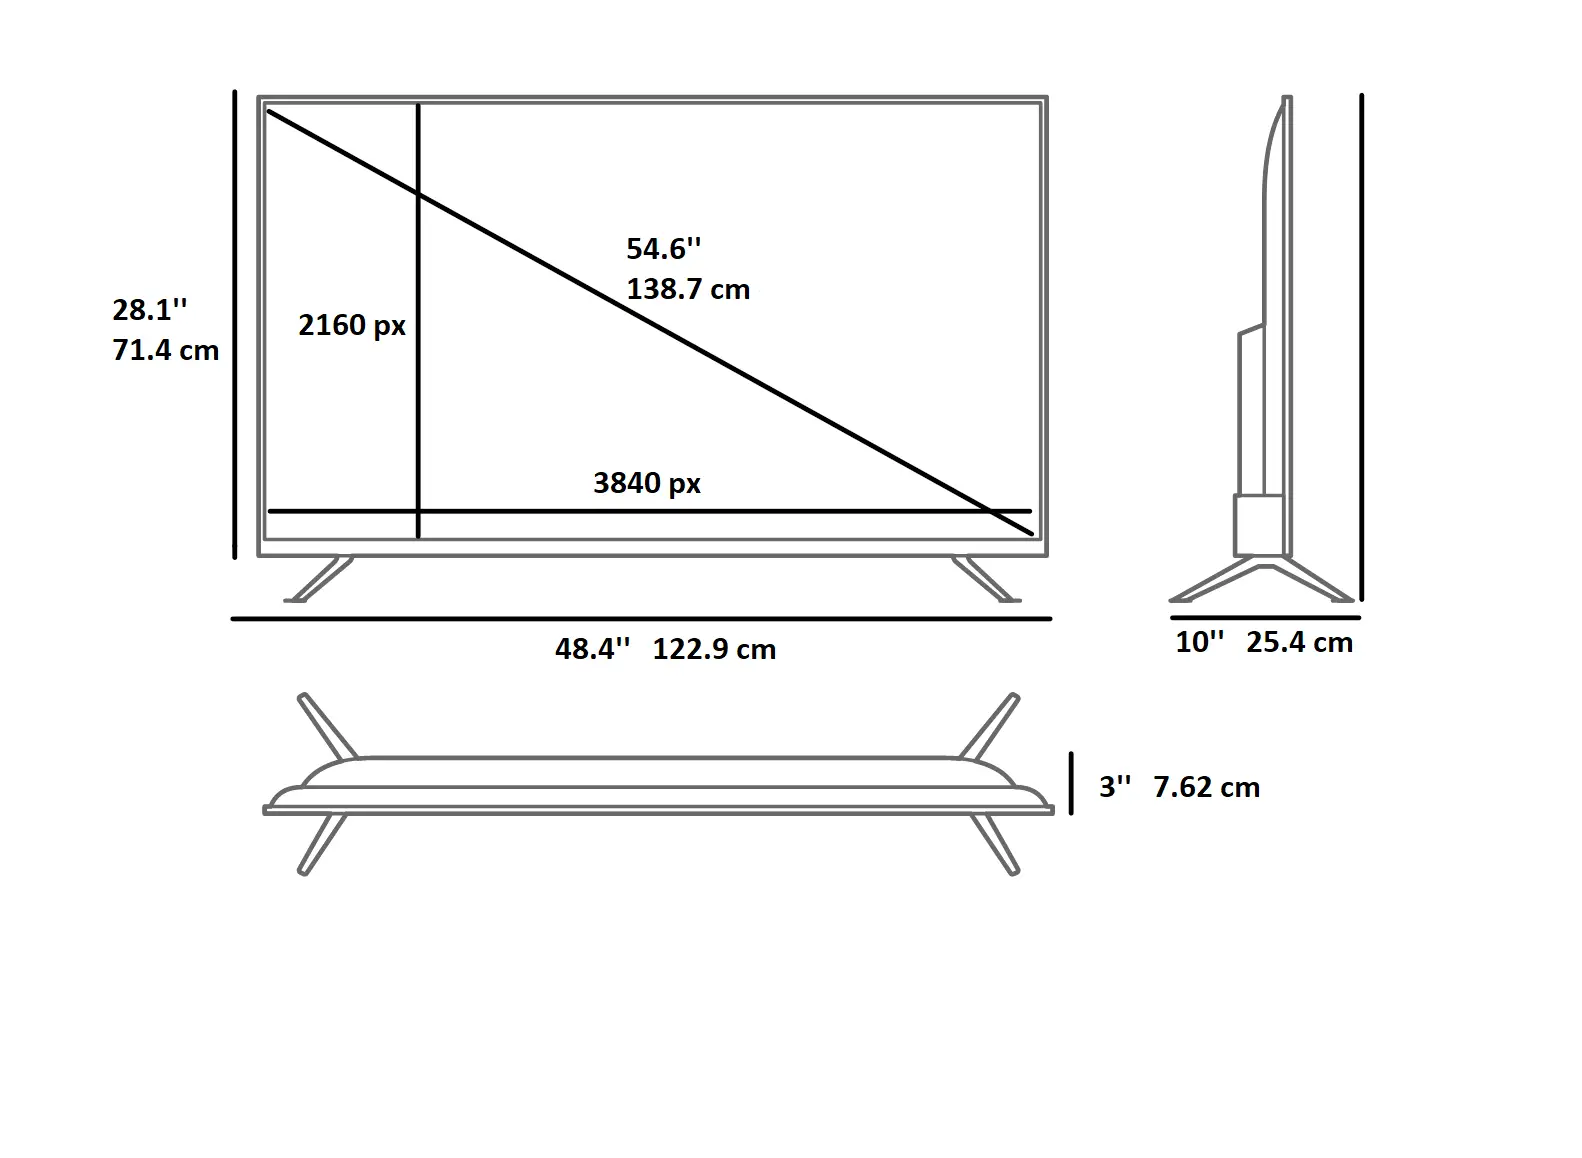 Telegraaf emulsie uniek 55 inch TV dimensions specs, inch, dimensions